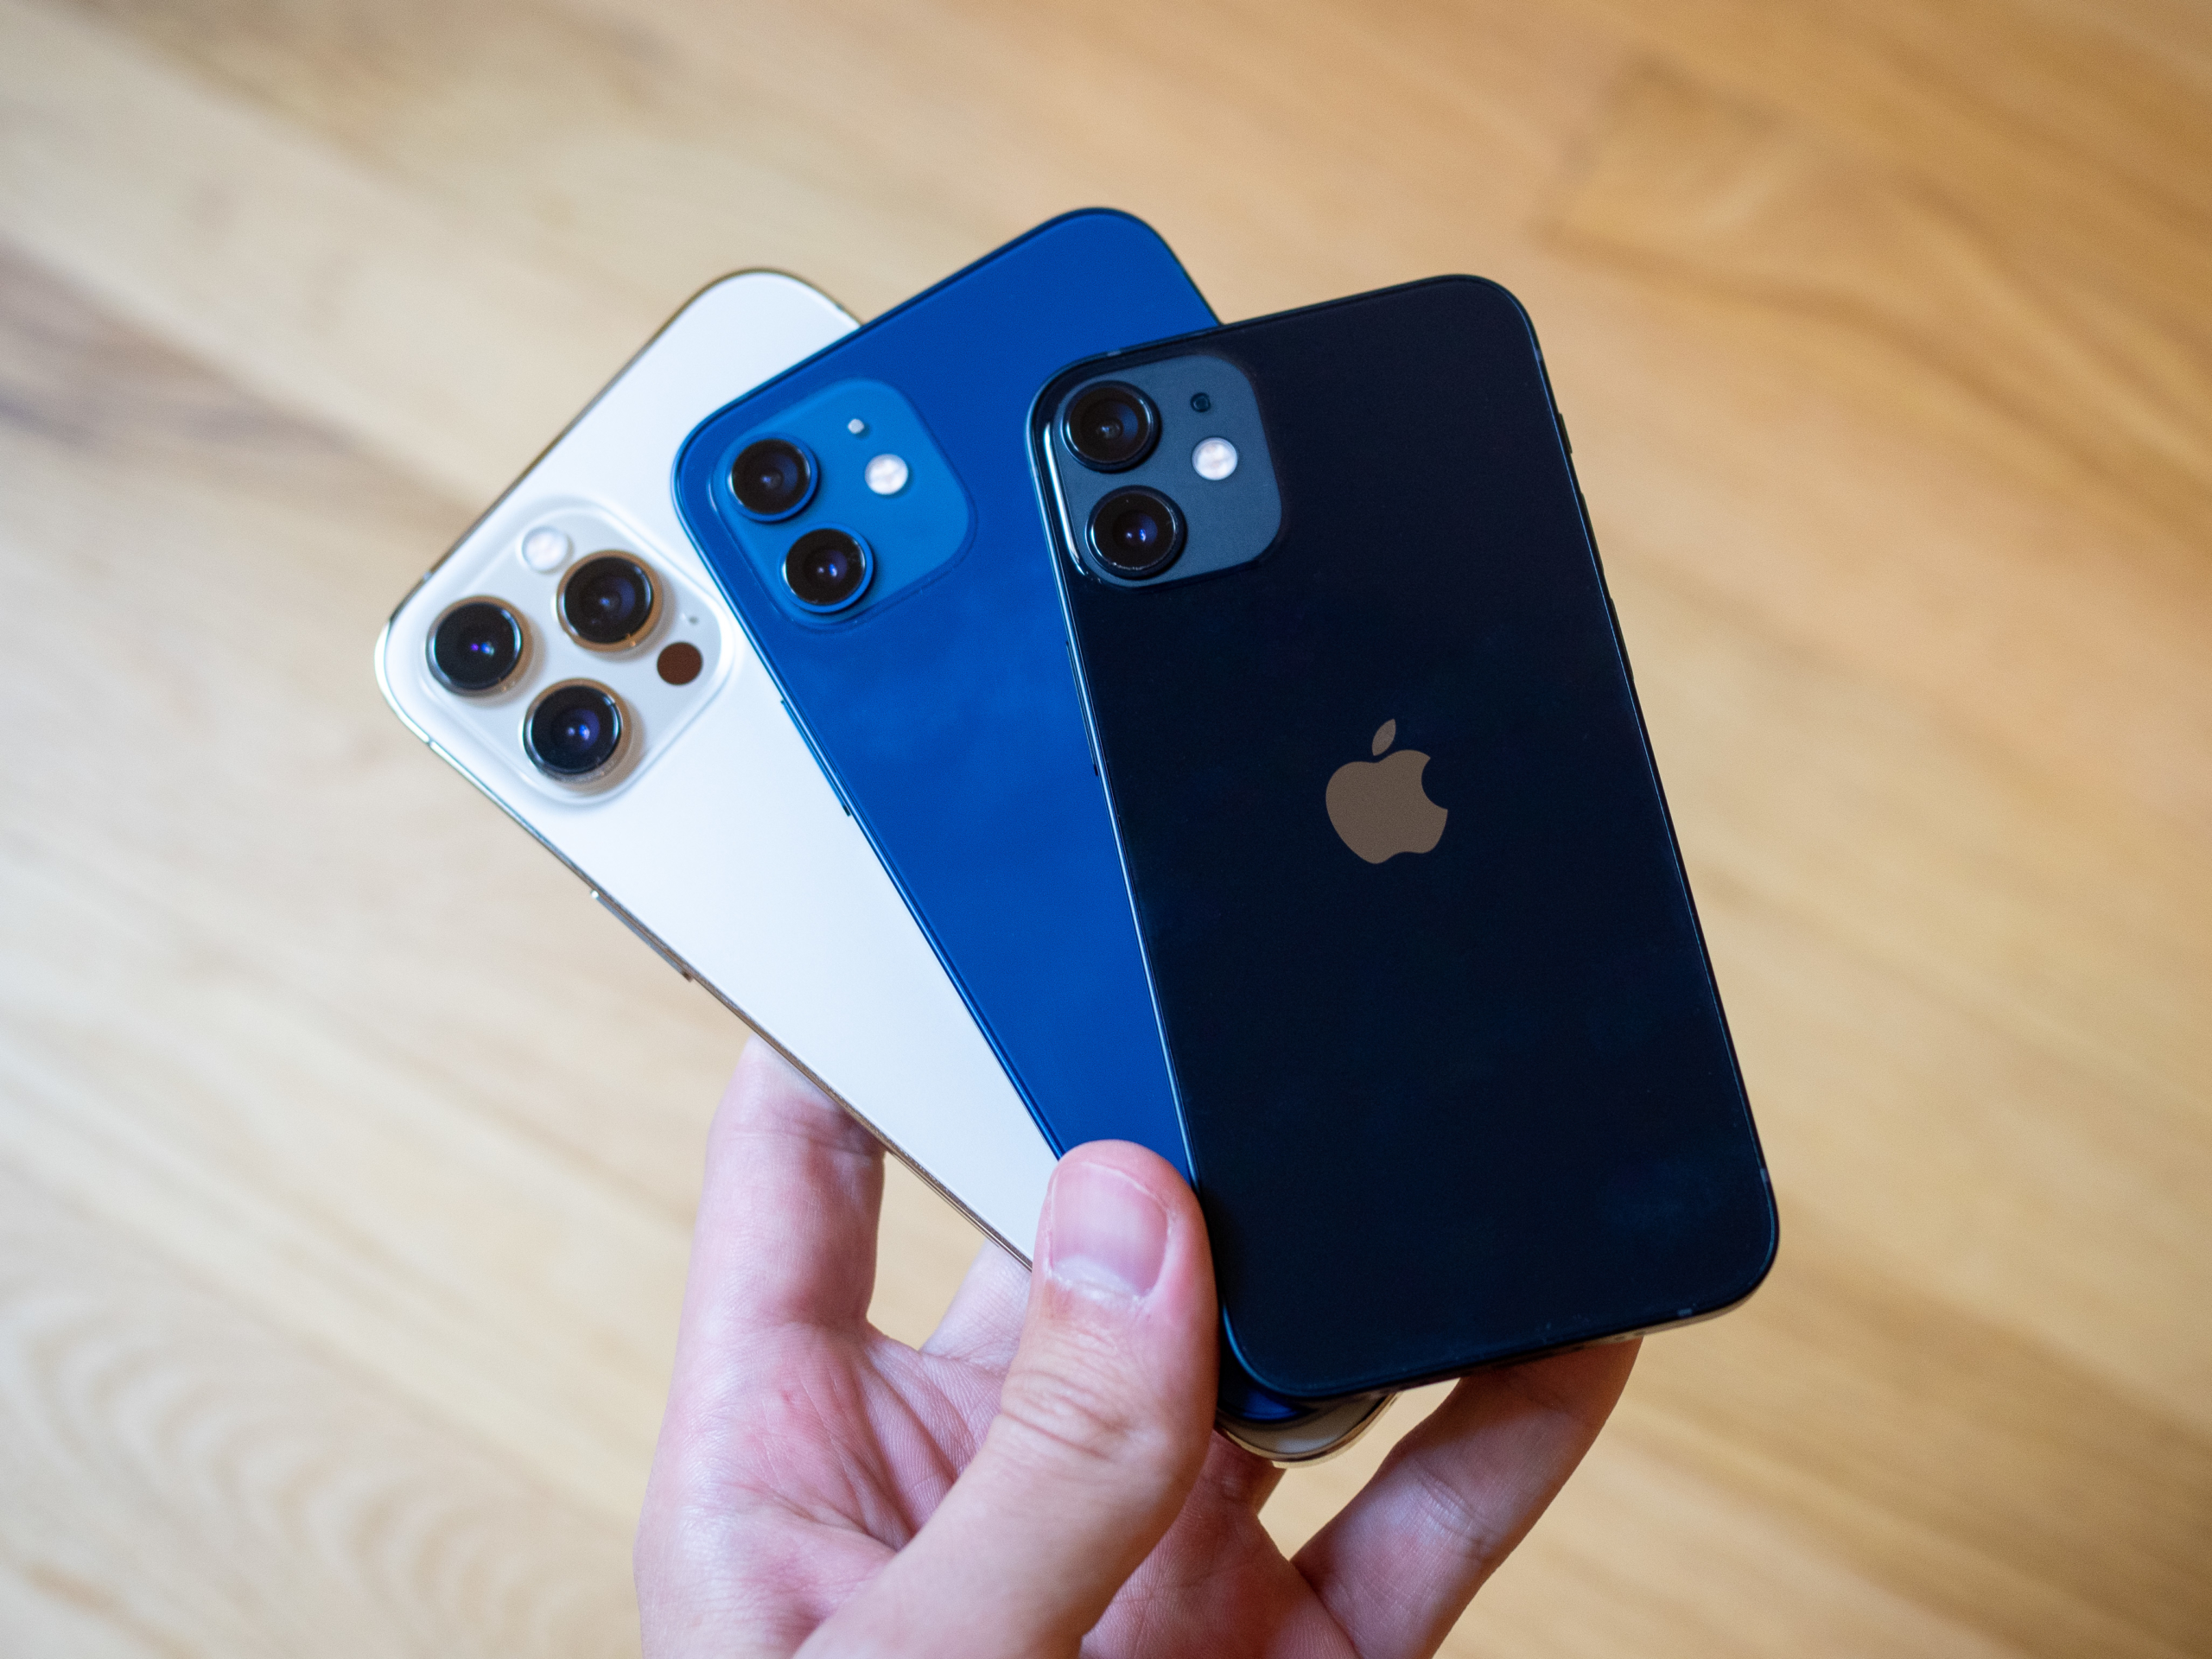 New Video Shows iPhone 12 mini Vs 12 Vs 11 Pro Max Size Comparison